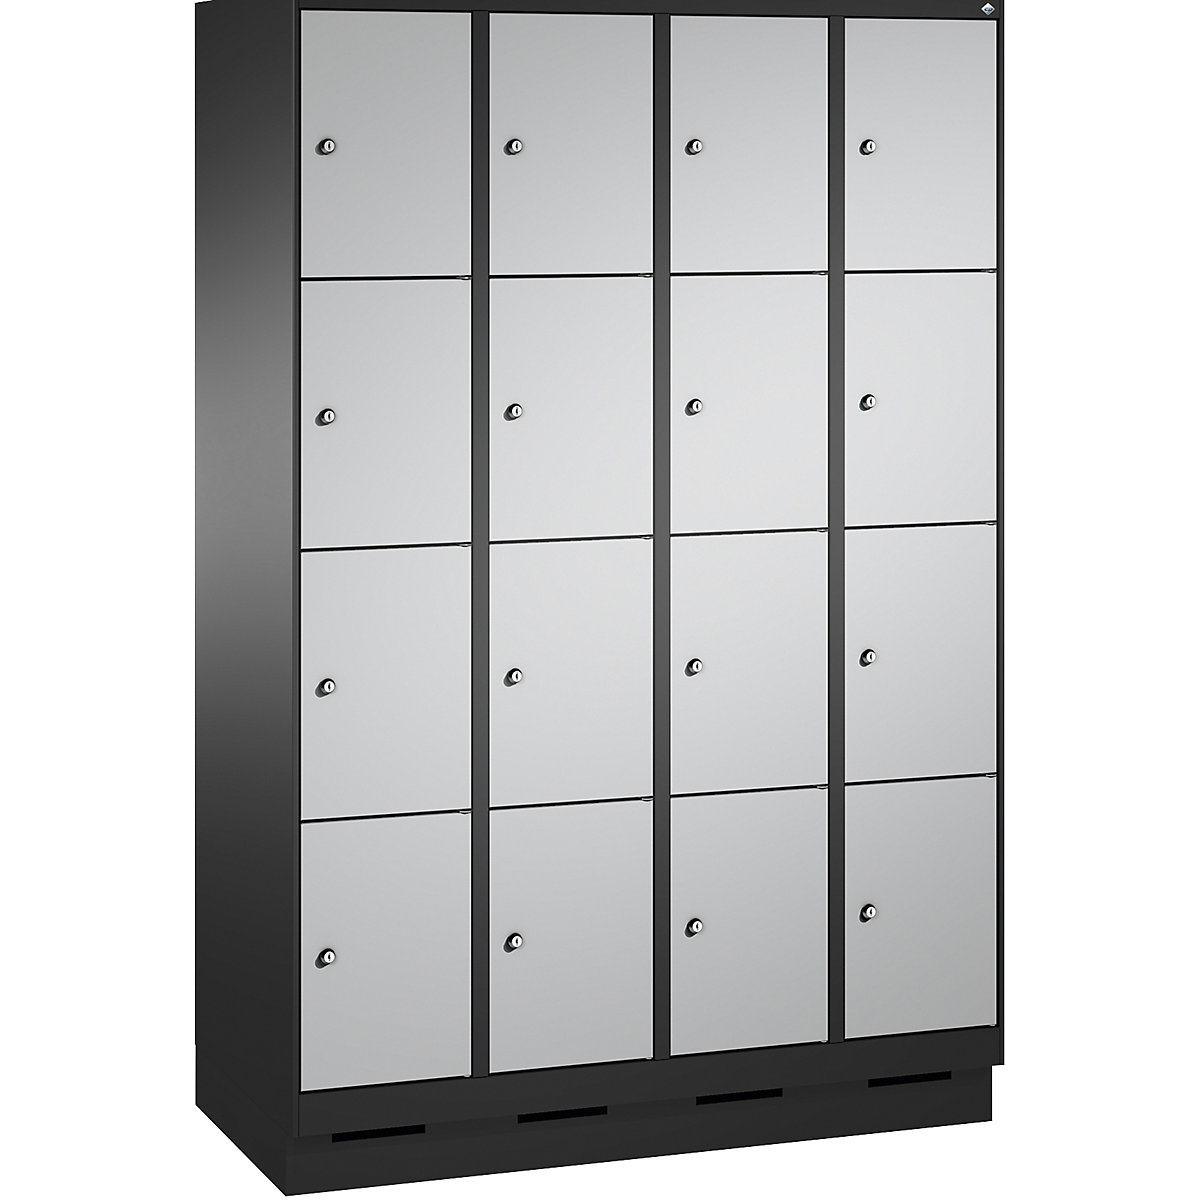 EVOLO locker unit, with plinth – C+P, 4 compartments, 4 shelf compartments each, compartment width 300 mm, black grey / white aluminium